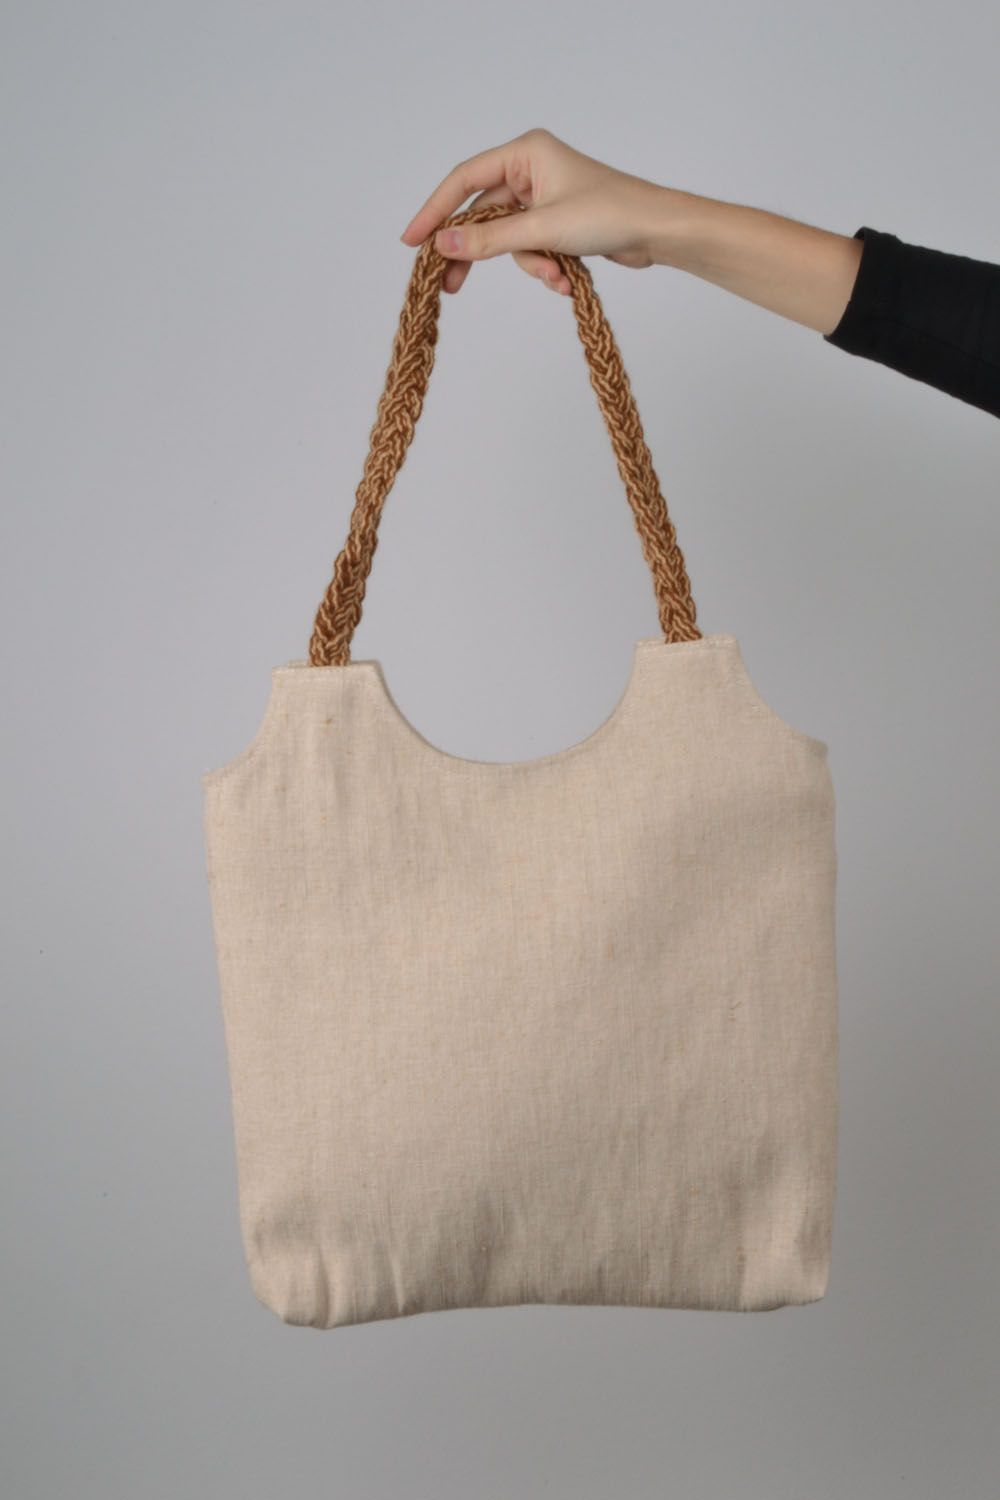 Текстильная сумка в эко-стиле фото 3